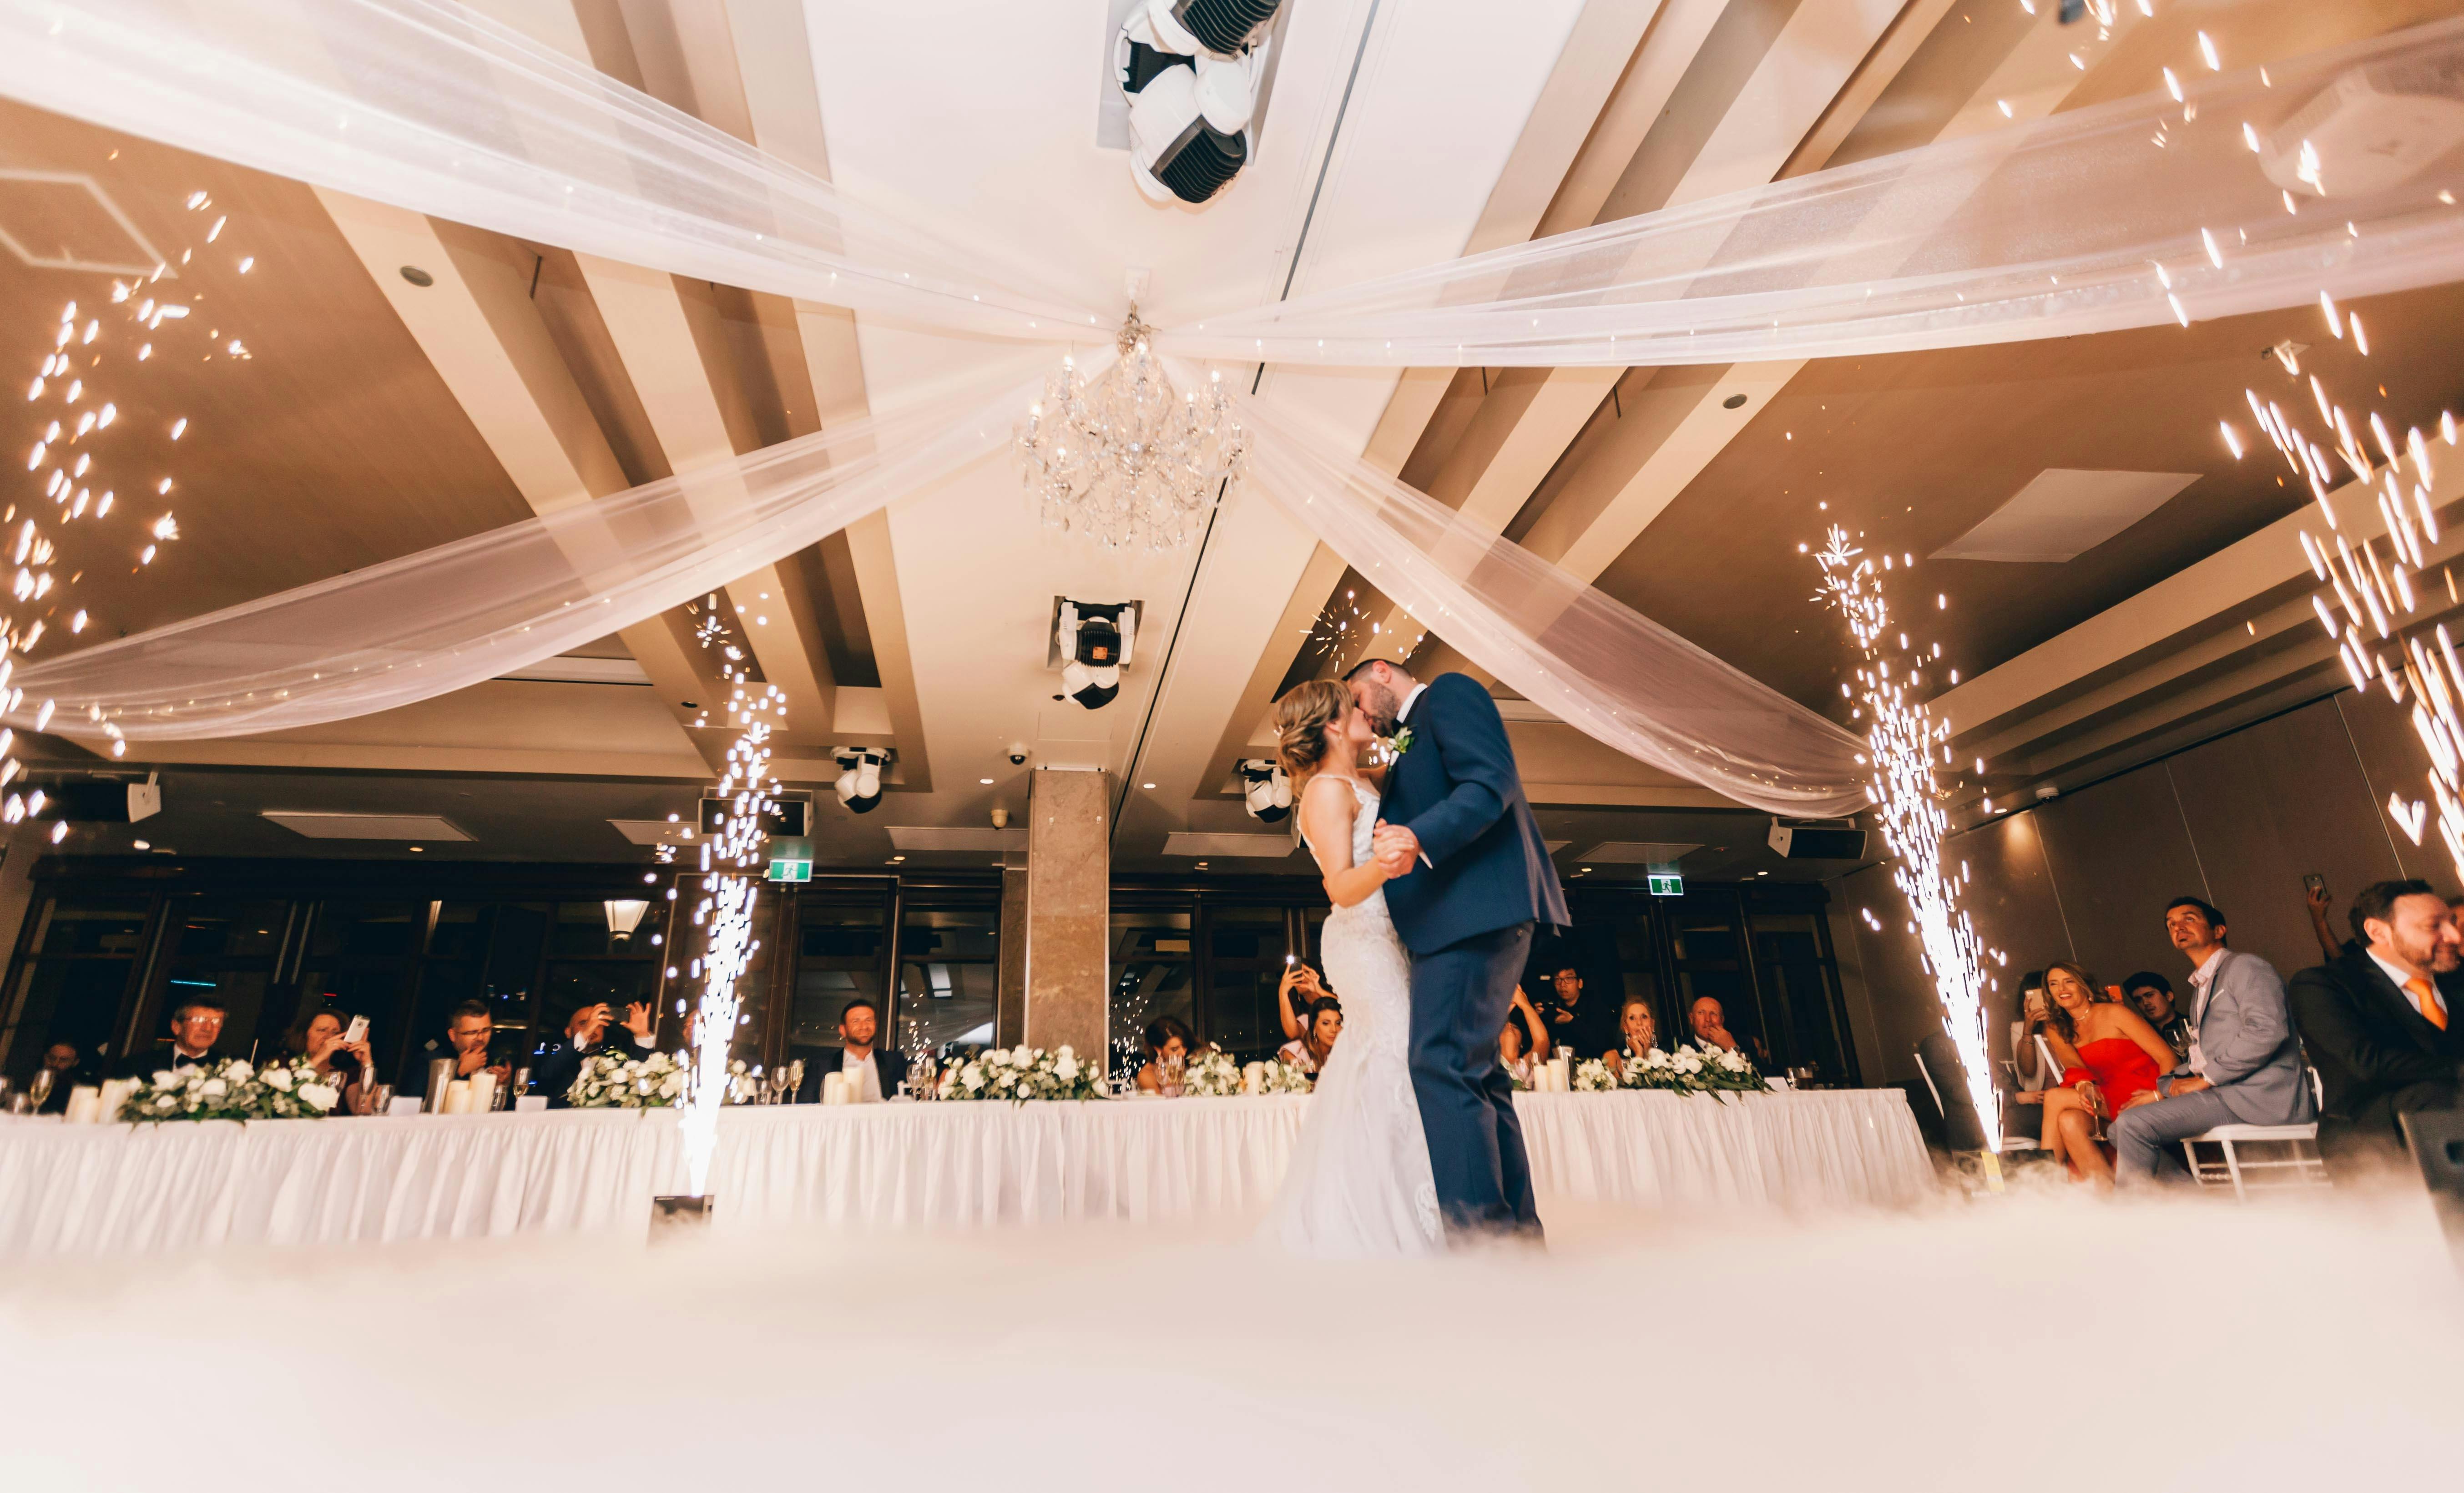 Ein tanzendes Paar an seinem Hochzeitstag | Quelle: Getty Images